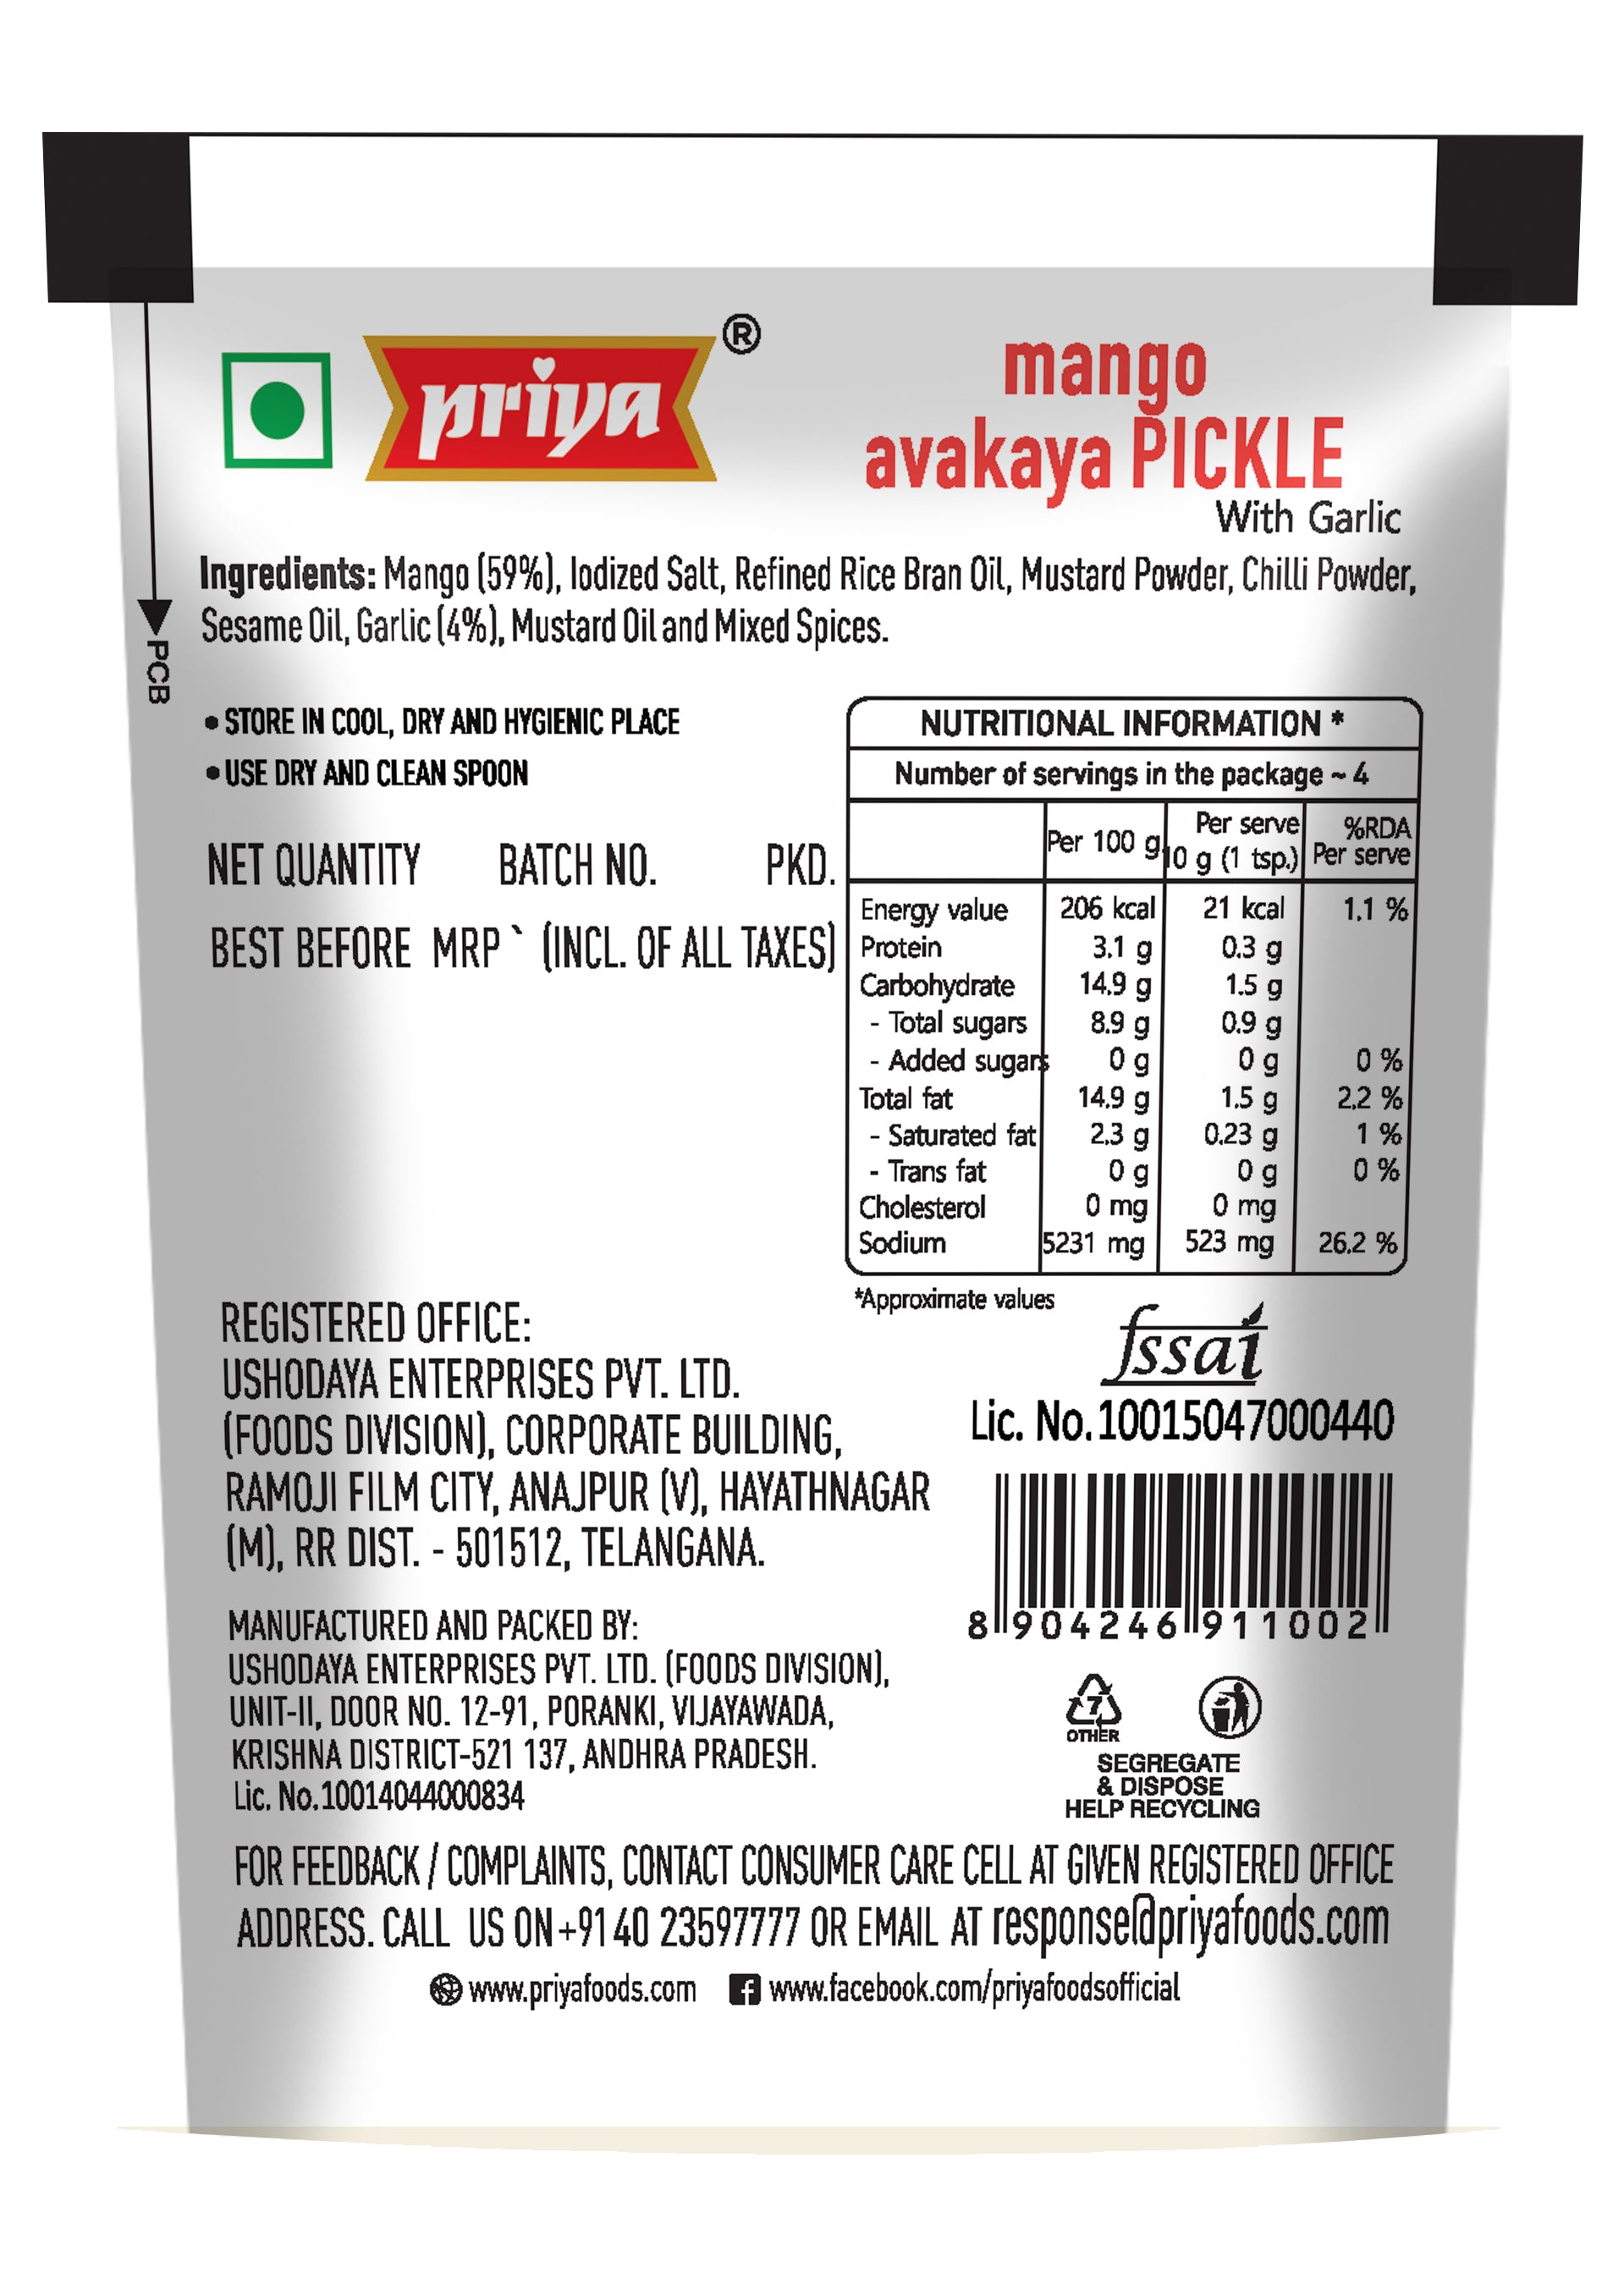 buy priya Mango Avakaya Pickle with garlic